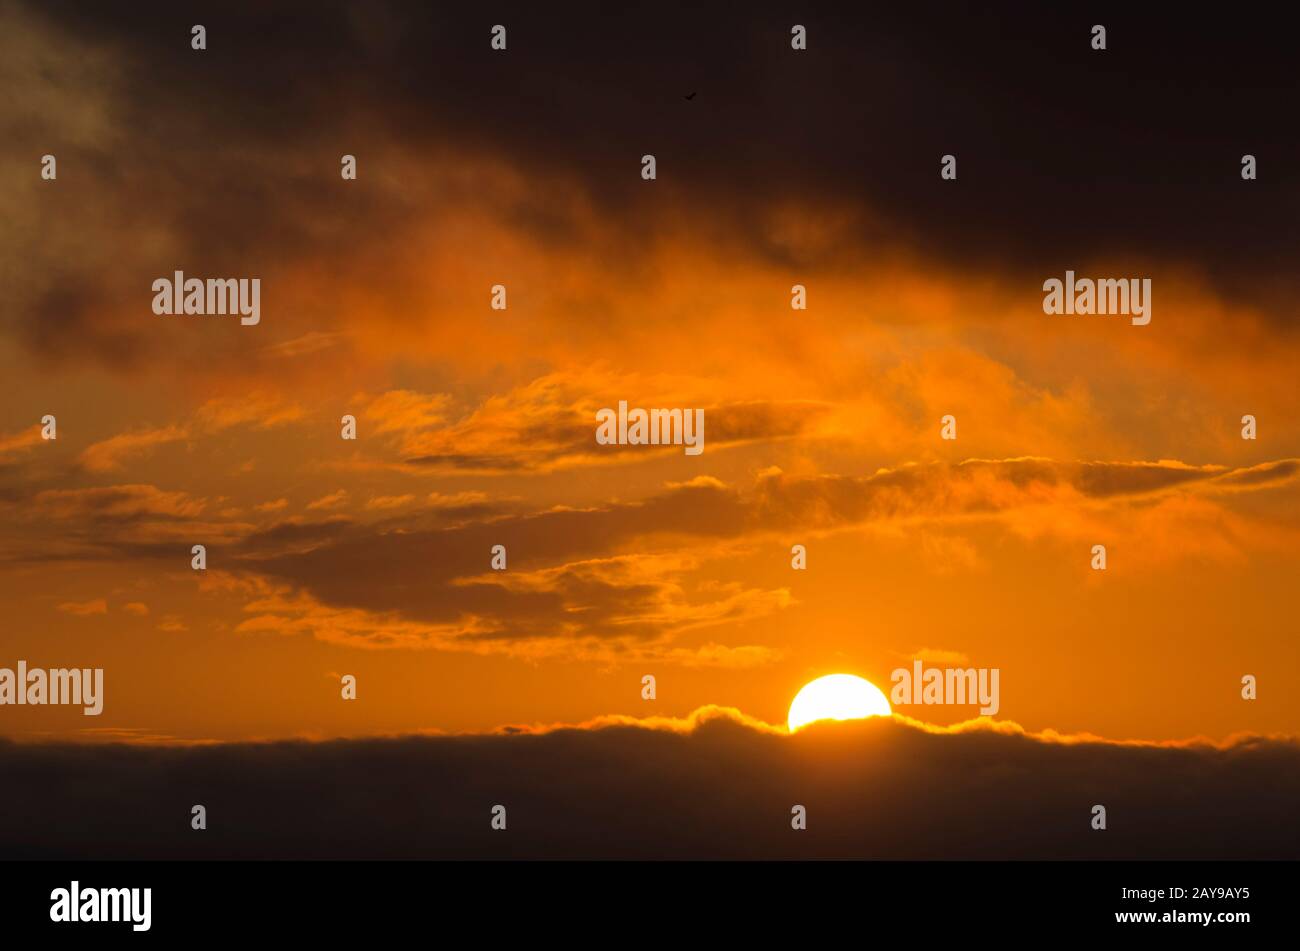 Tramonto spettacolare e bello, cielo nuvoloso di colore arancione intenso, a San Clemente del Tuyu, Buenos Aires, Argentina Foto Stock